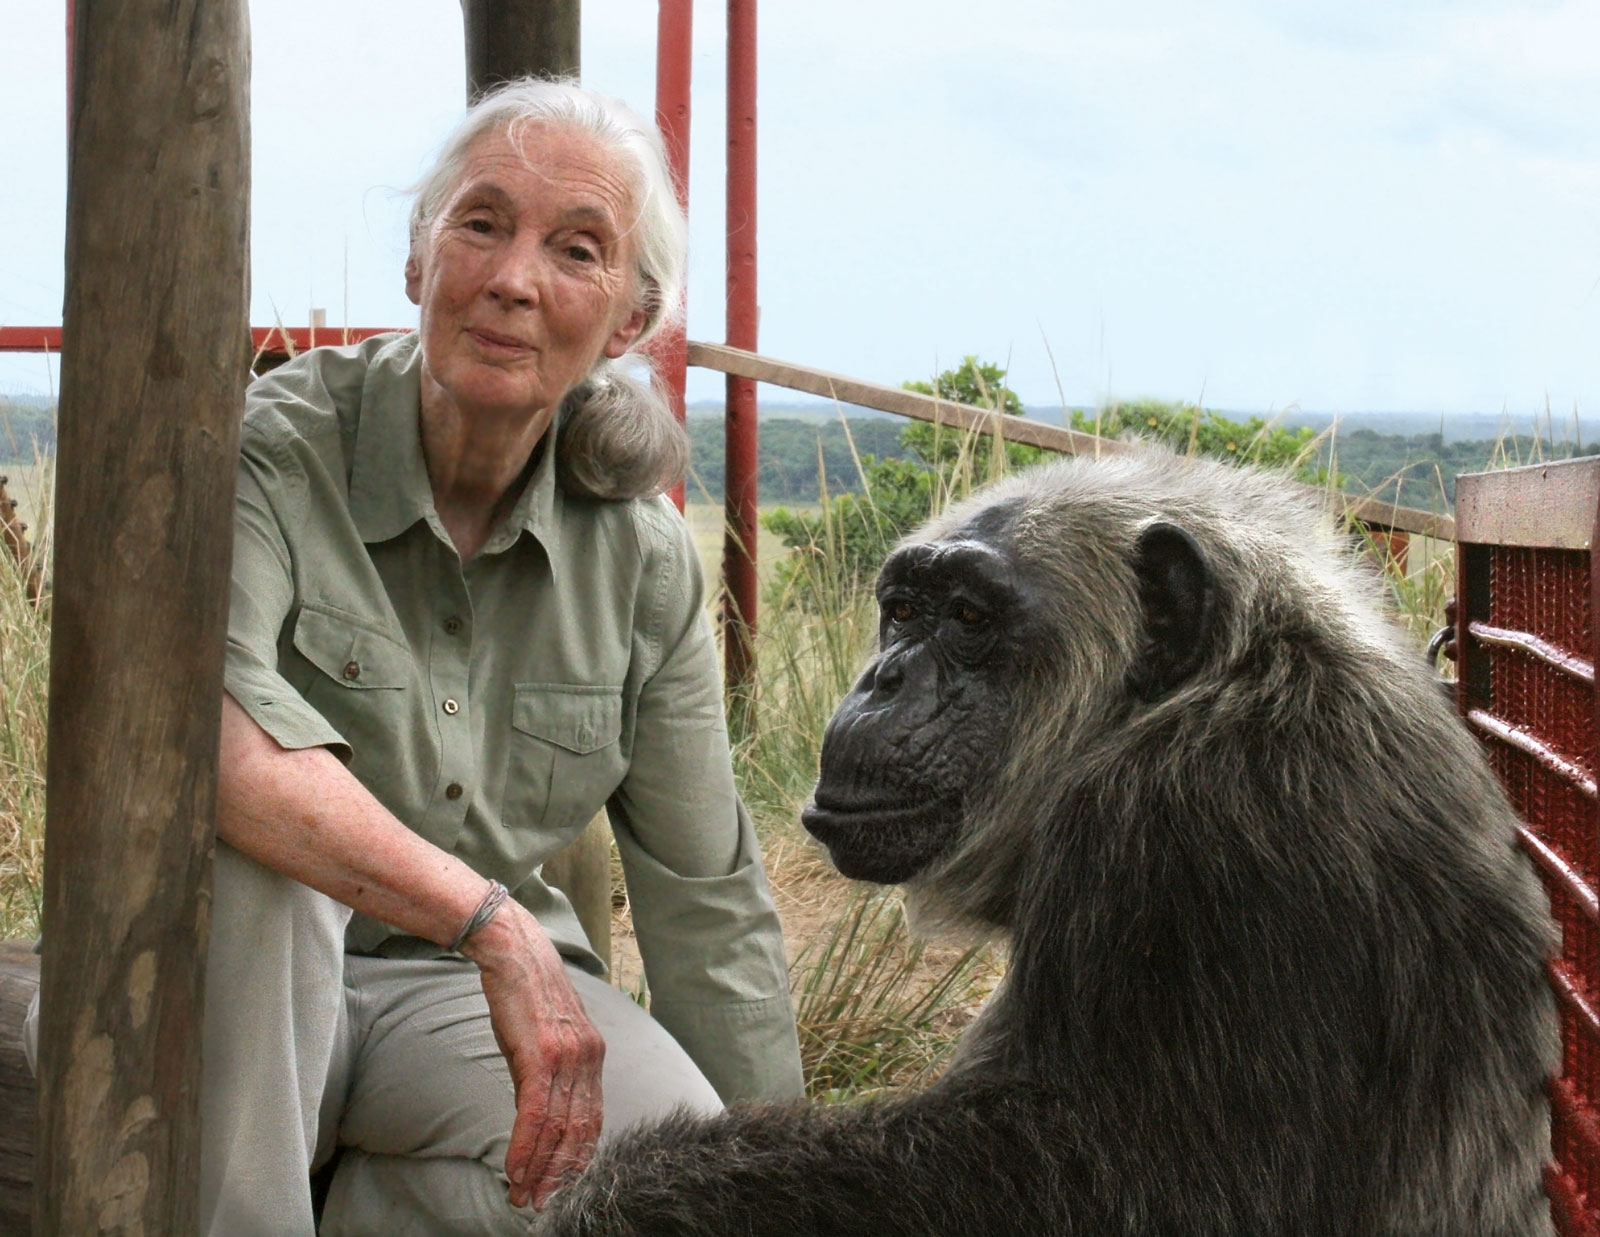 Jane Goodall - Disrespect Of Animals Caused Coronavirus